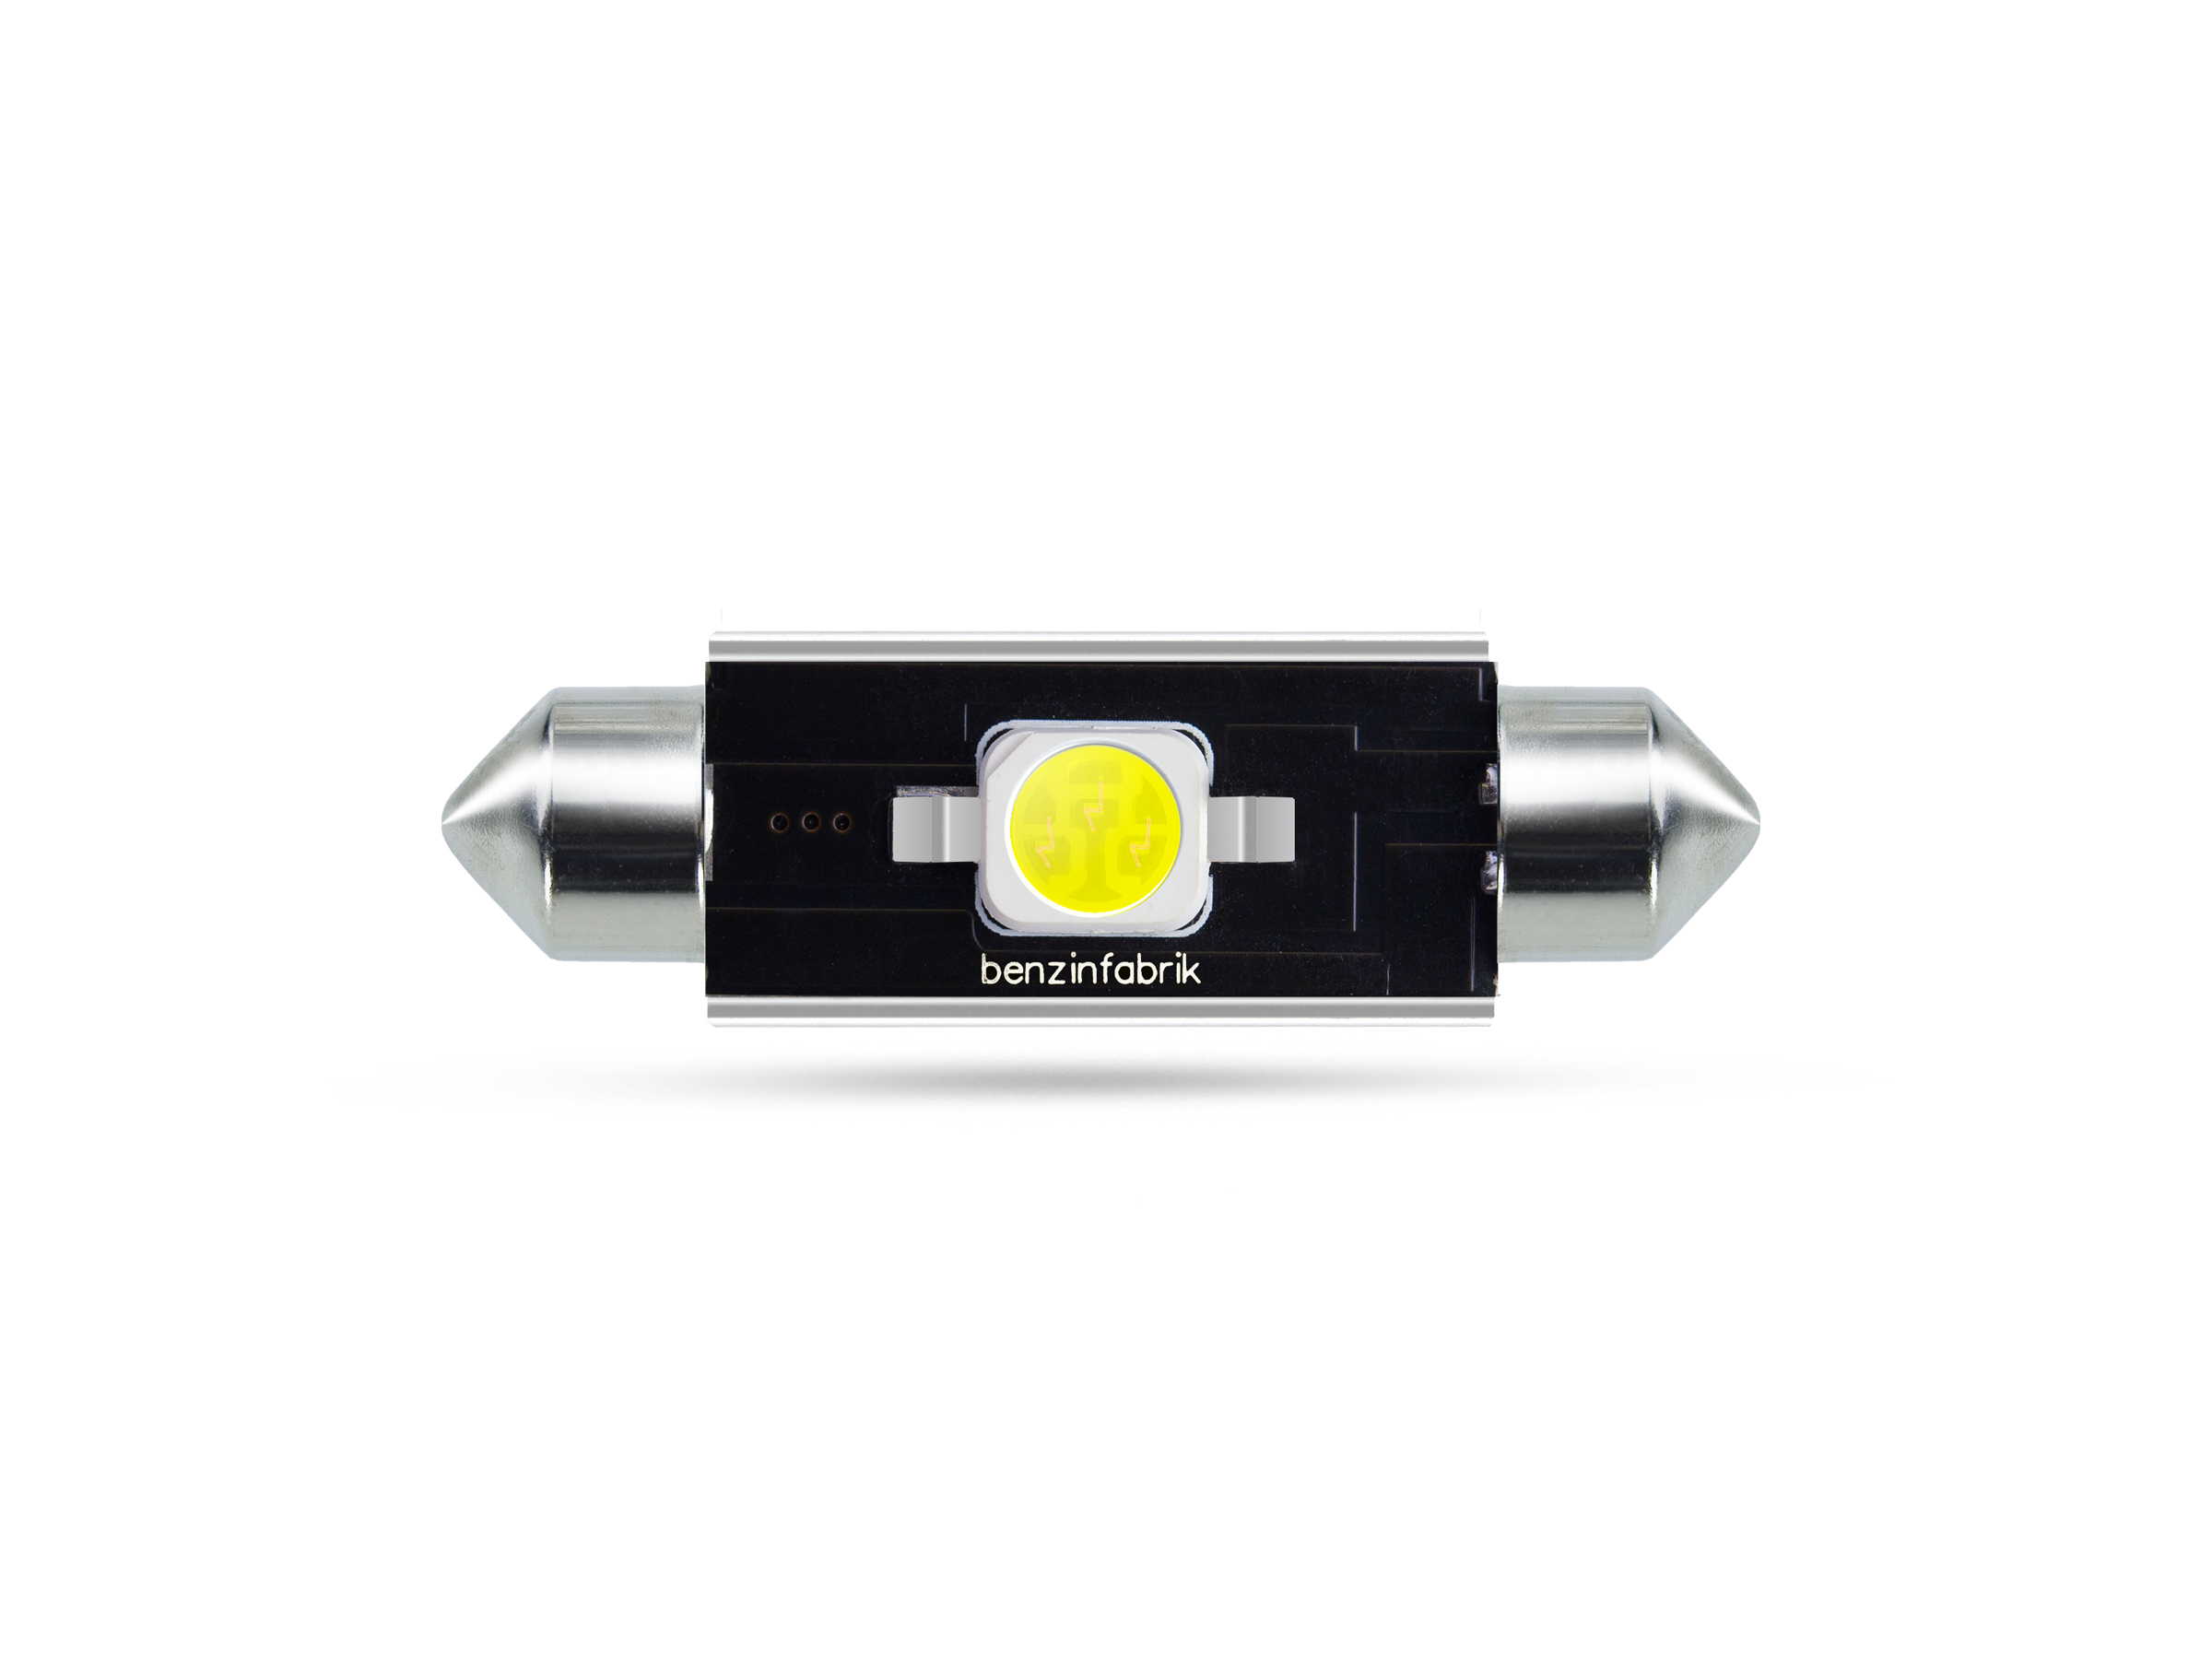 42mm 2 Watt SMD LED Soffitte Innenraumlicht, CAN-bus, weiss, SMD LED  Soffitten, weiss, LED Soffitten, Auto Innenraumlicht, LED Auto  Innenraumbeleuchtung